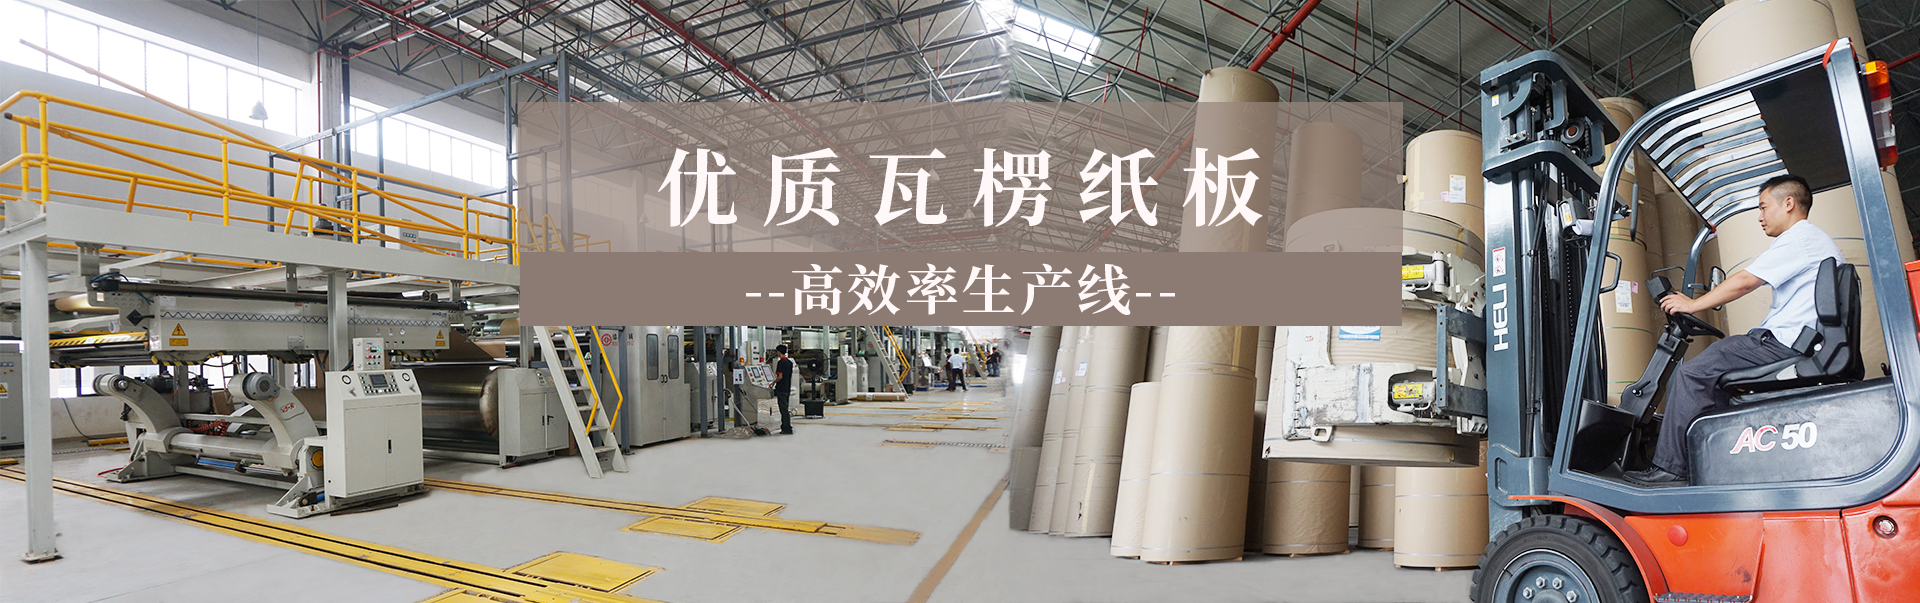 瓦楞紙板批發生產工廠找力嘉包裝52年工廠